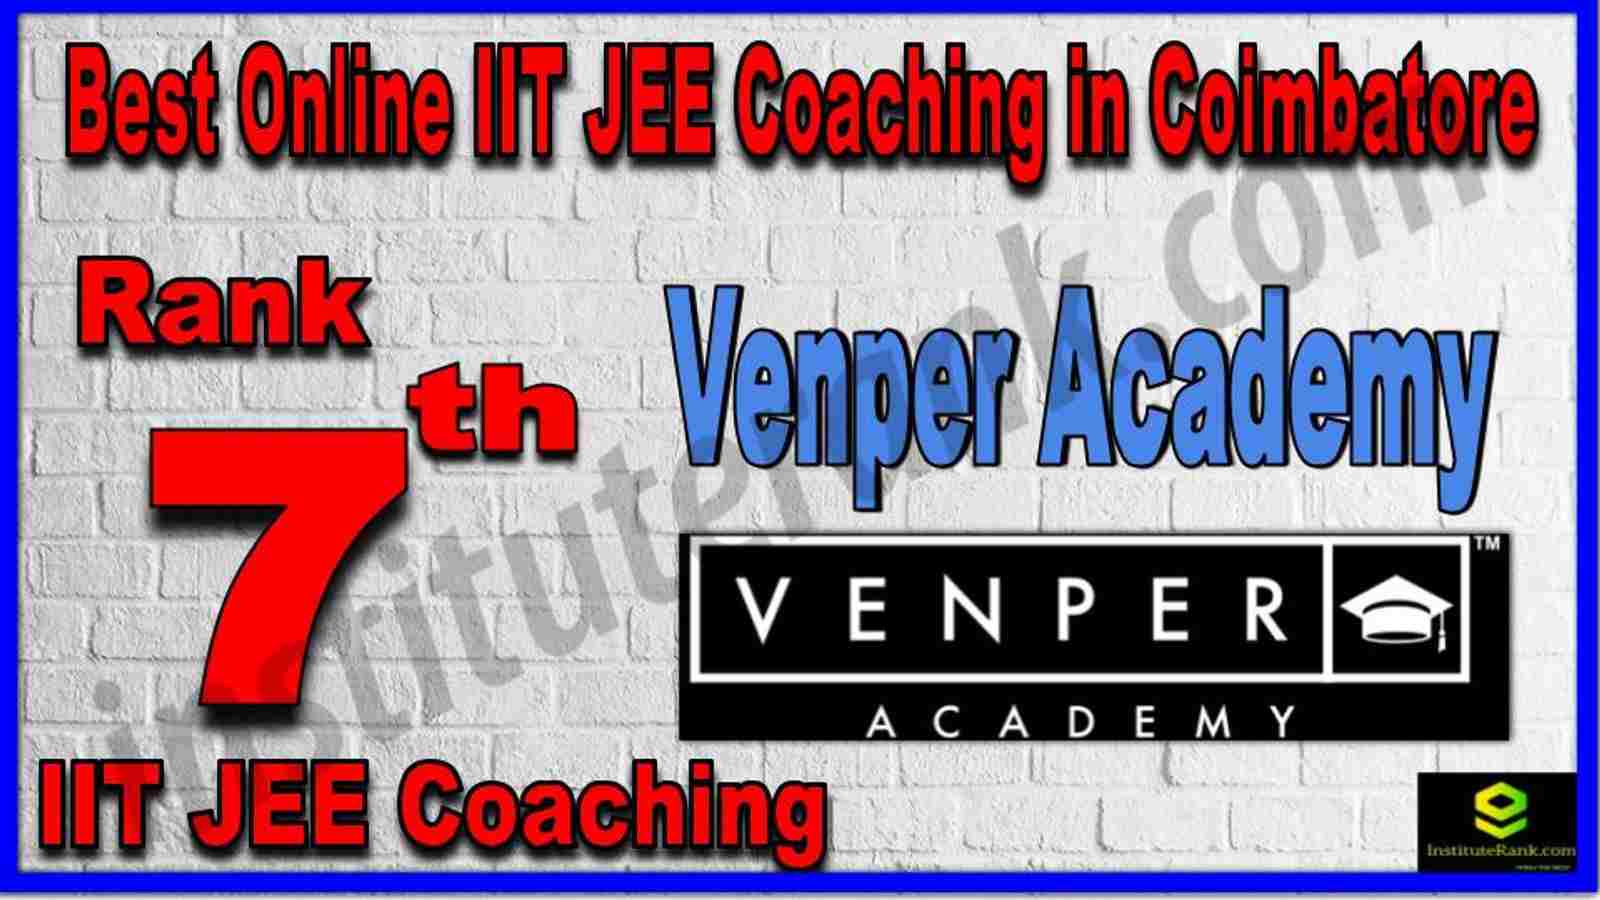 Rank 7th Best Online IIT JEE Coaching in Coimbatore